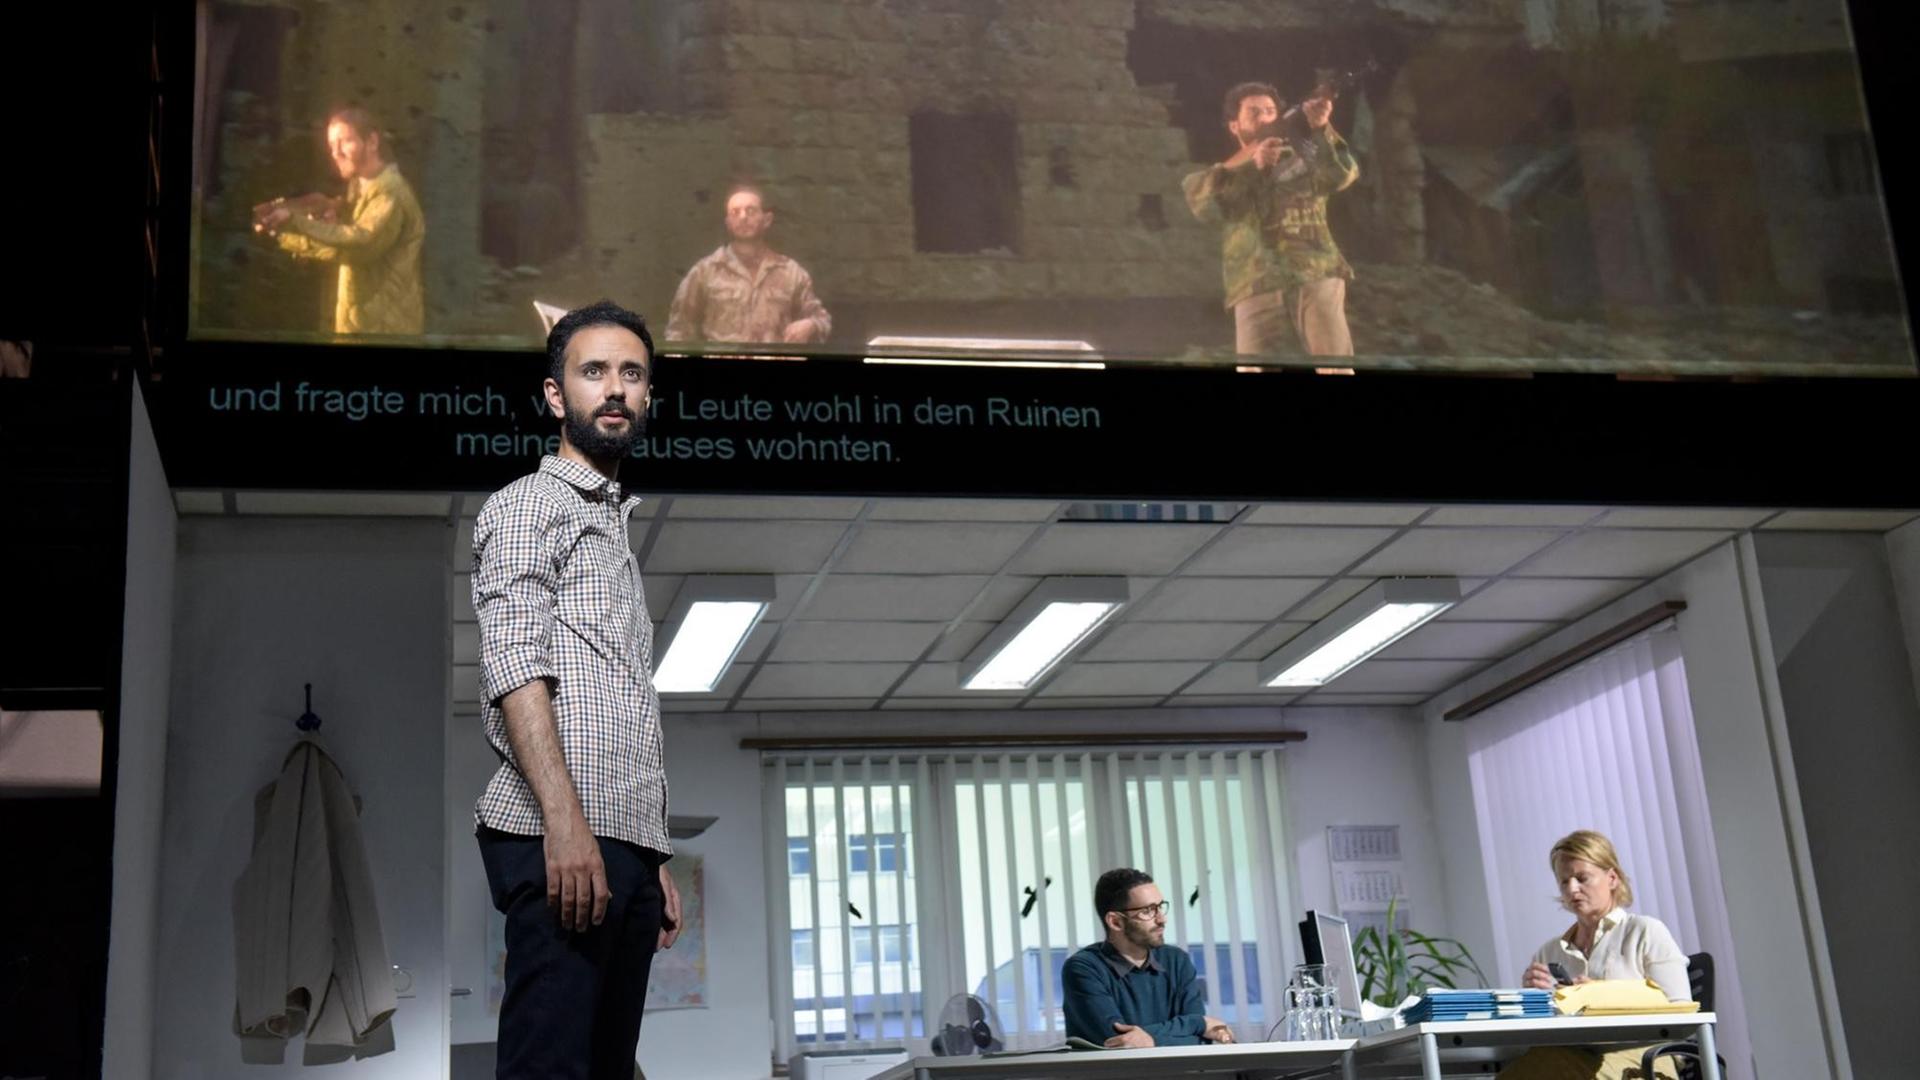 Der geflüchtete syrische Archäologe Raaed Al Kour steht in Lola Arias' Dokumentartheater "What they want to hear" selbst auf der Bühne und erzählt seine Geschichte